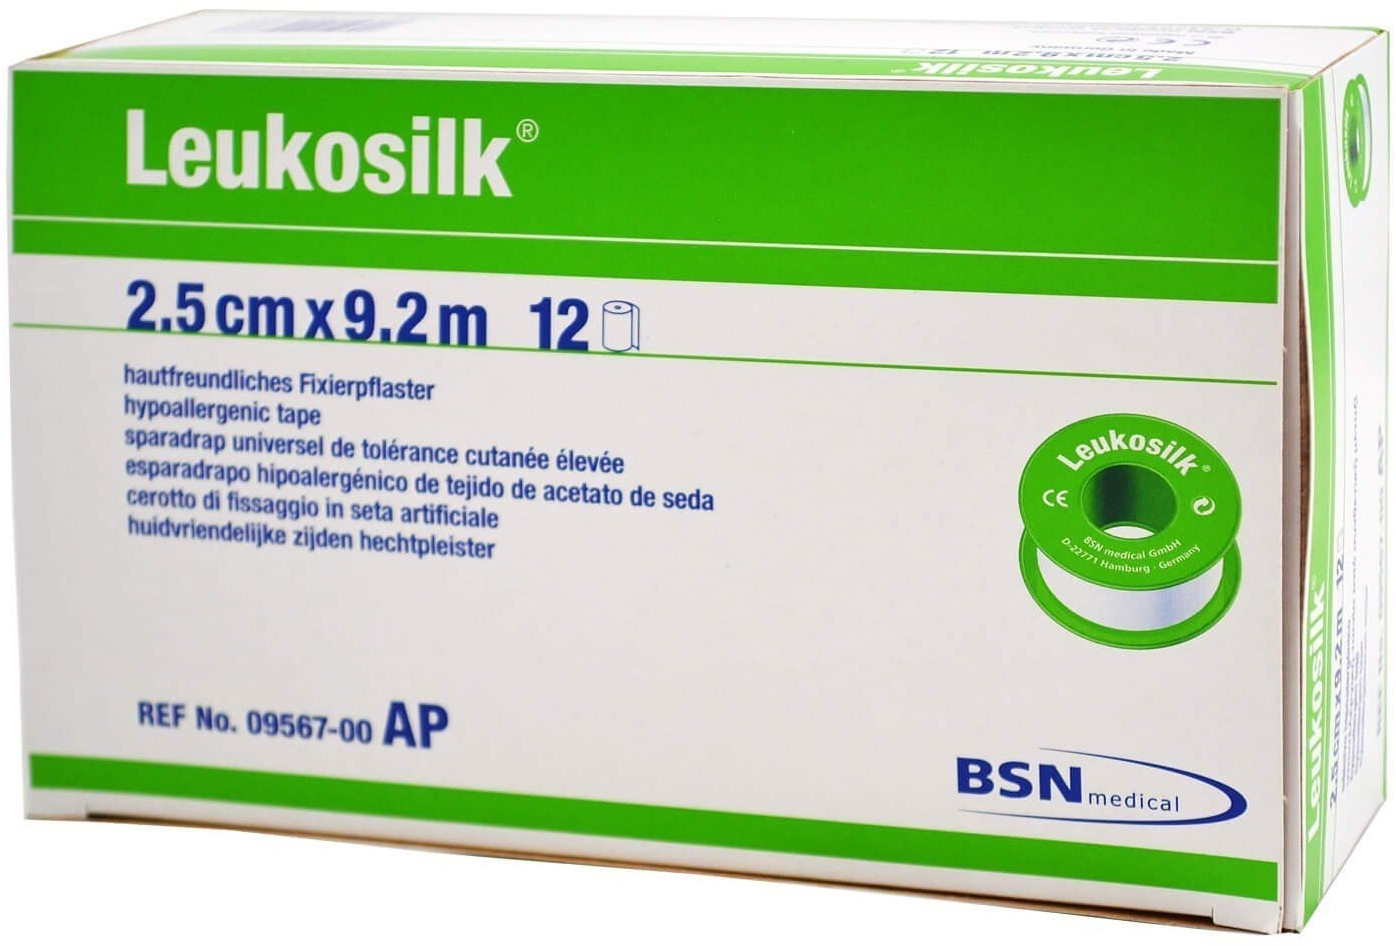 BSN Medical Leukosilk 2,50 cm x 9,2 m ohne Schutzring ab 5,34